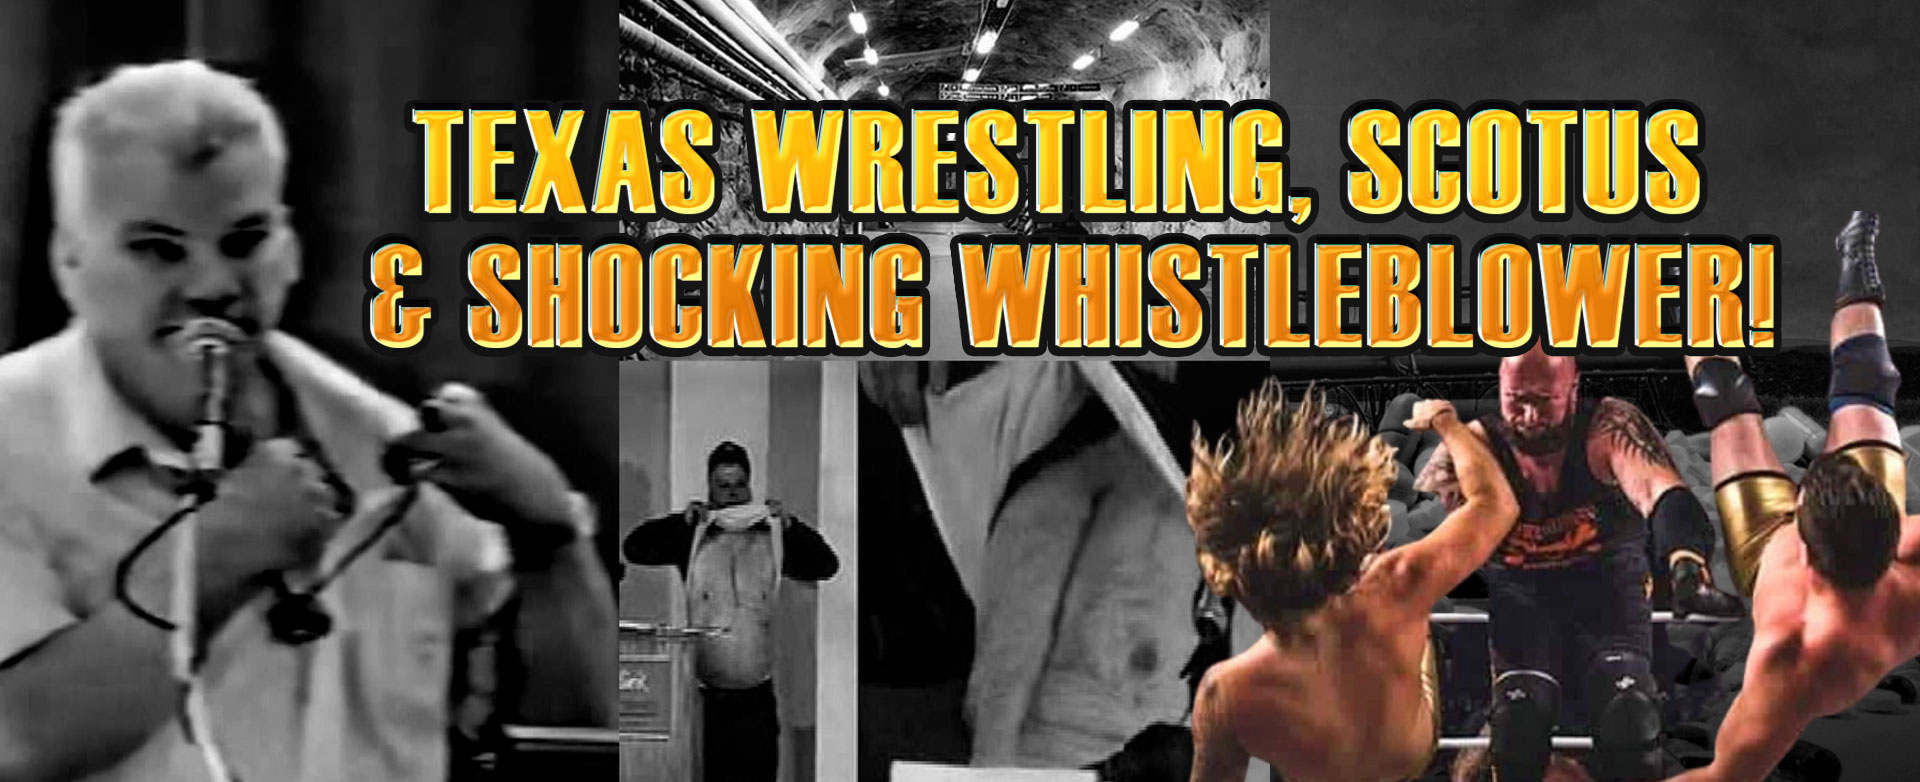 MyPatriotsNetwork-Texas Wrestling, SCOTUS & Shocking Whistleblower! March 13, 2021 Update